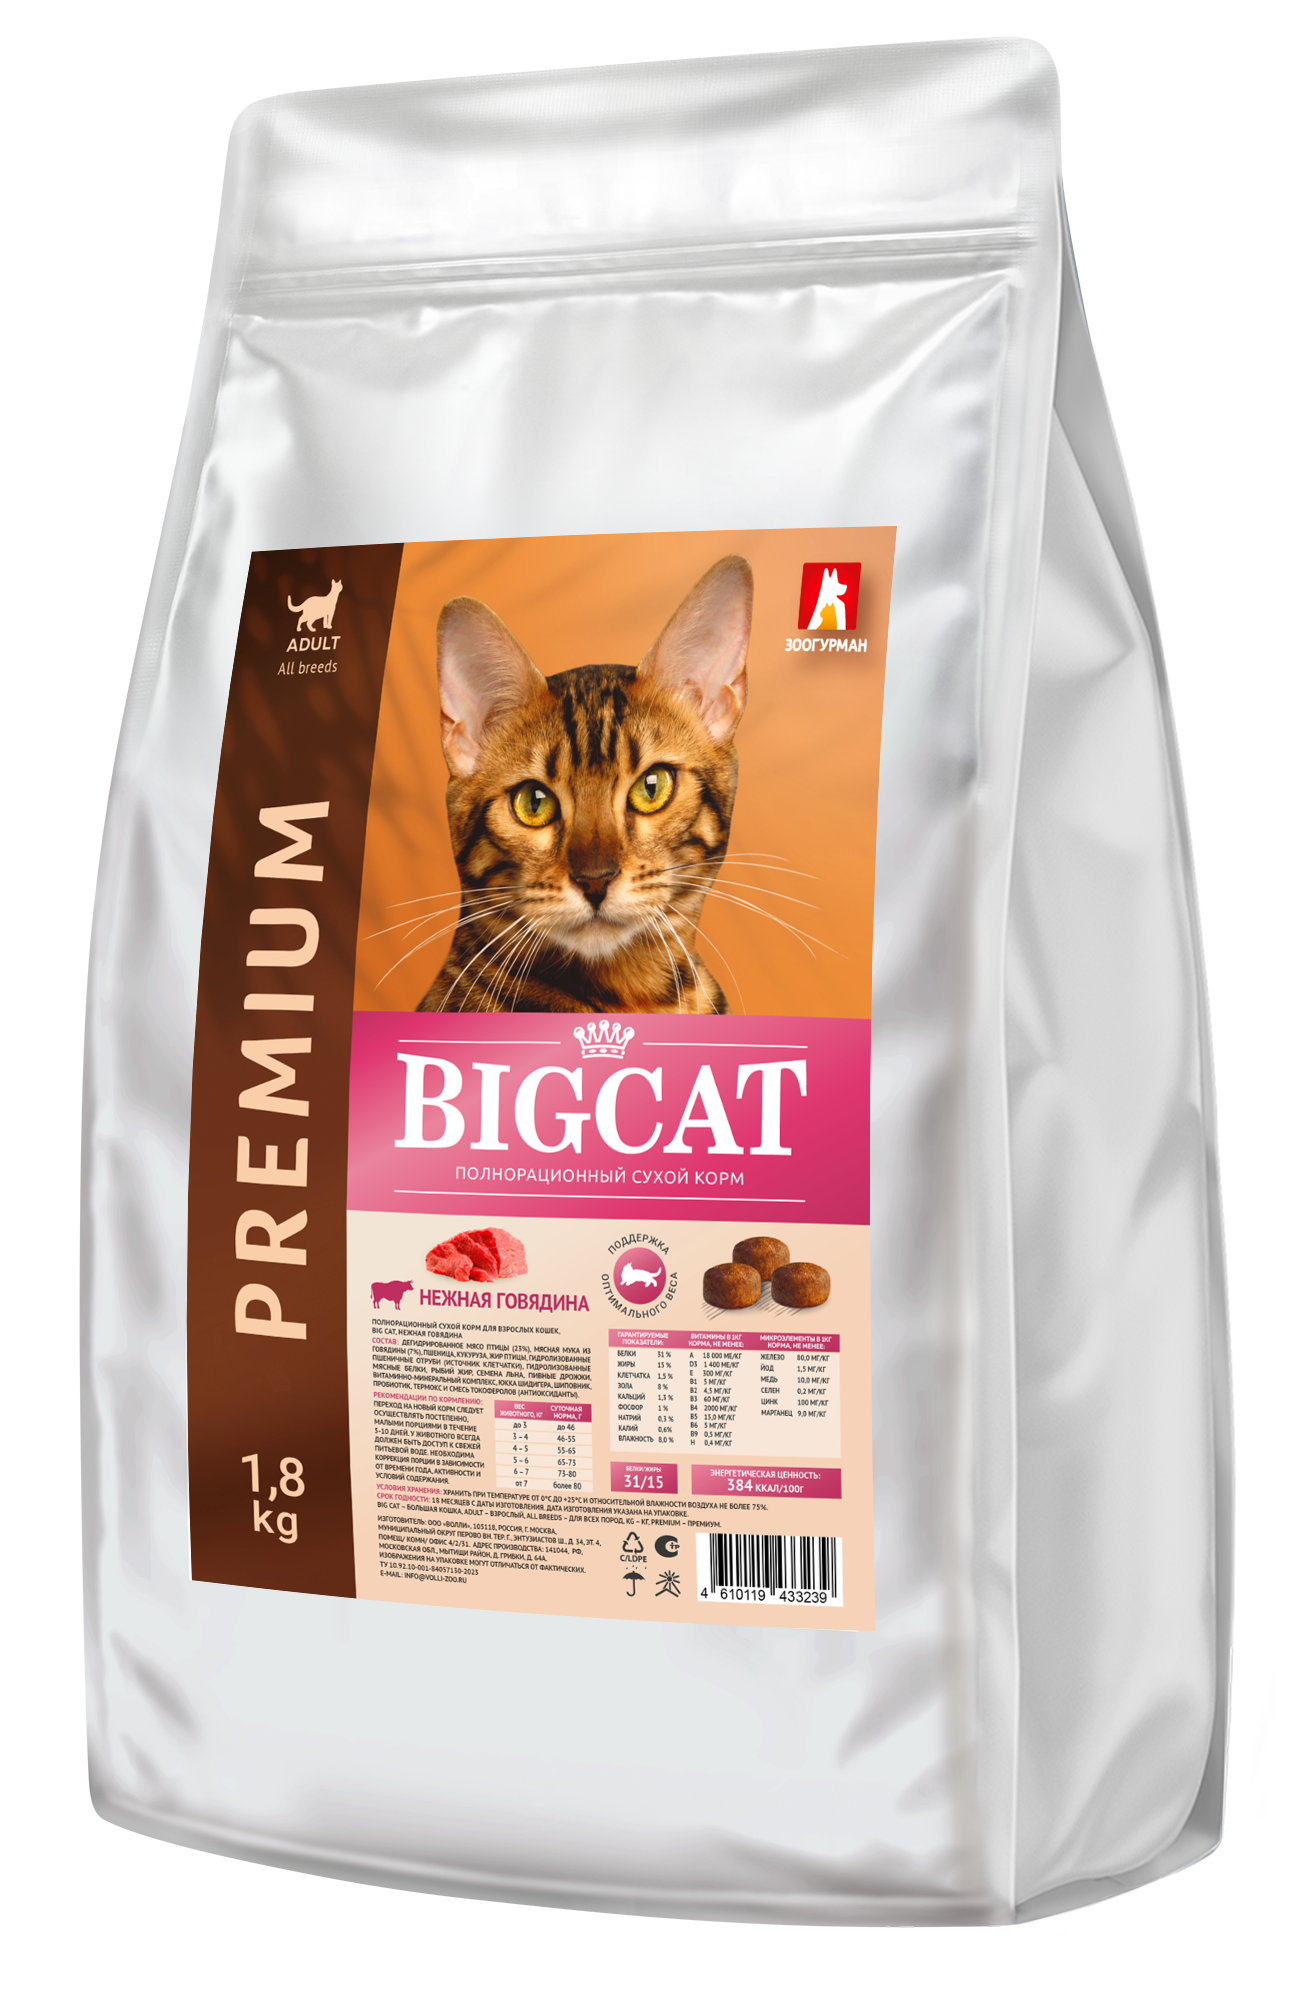 Zoogurman BIG CAT сухой корм для кошек с нежной говядиной 1.8кг фото, цены, купить